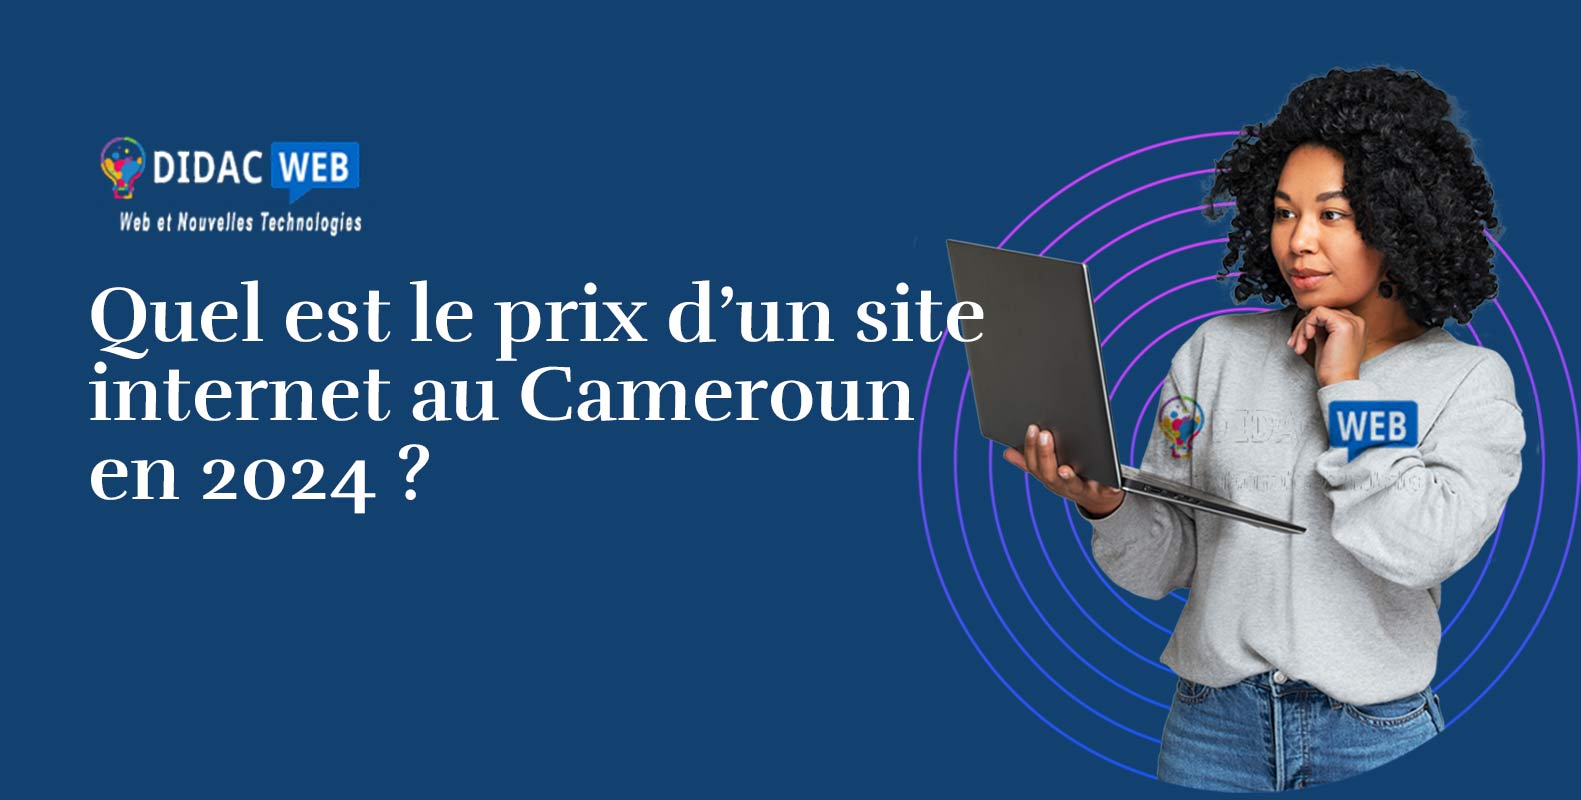 Le Prix d'un site internet au Cameroun en 2024